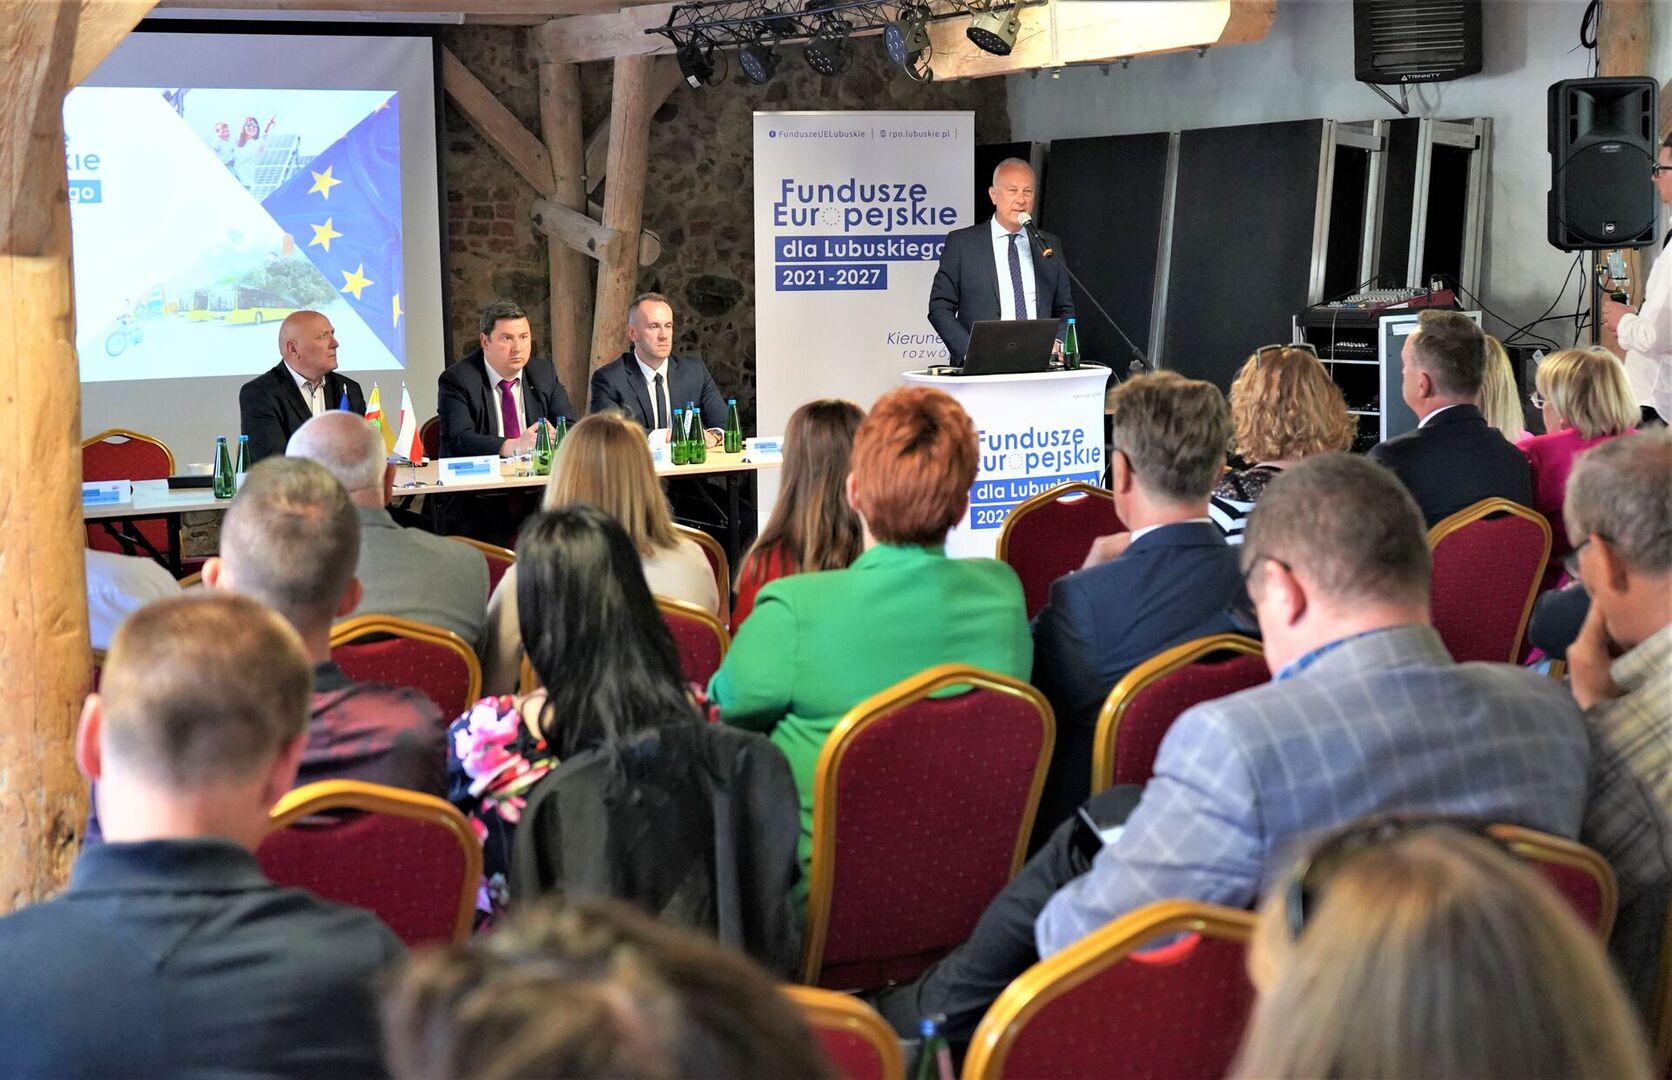 1 czerwca 2023 r. Spotkanie informacyjne na temat Funduszy Europejskich dla Lubuskiego 2021-2027 w Żarach